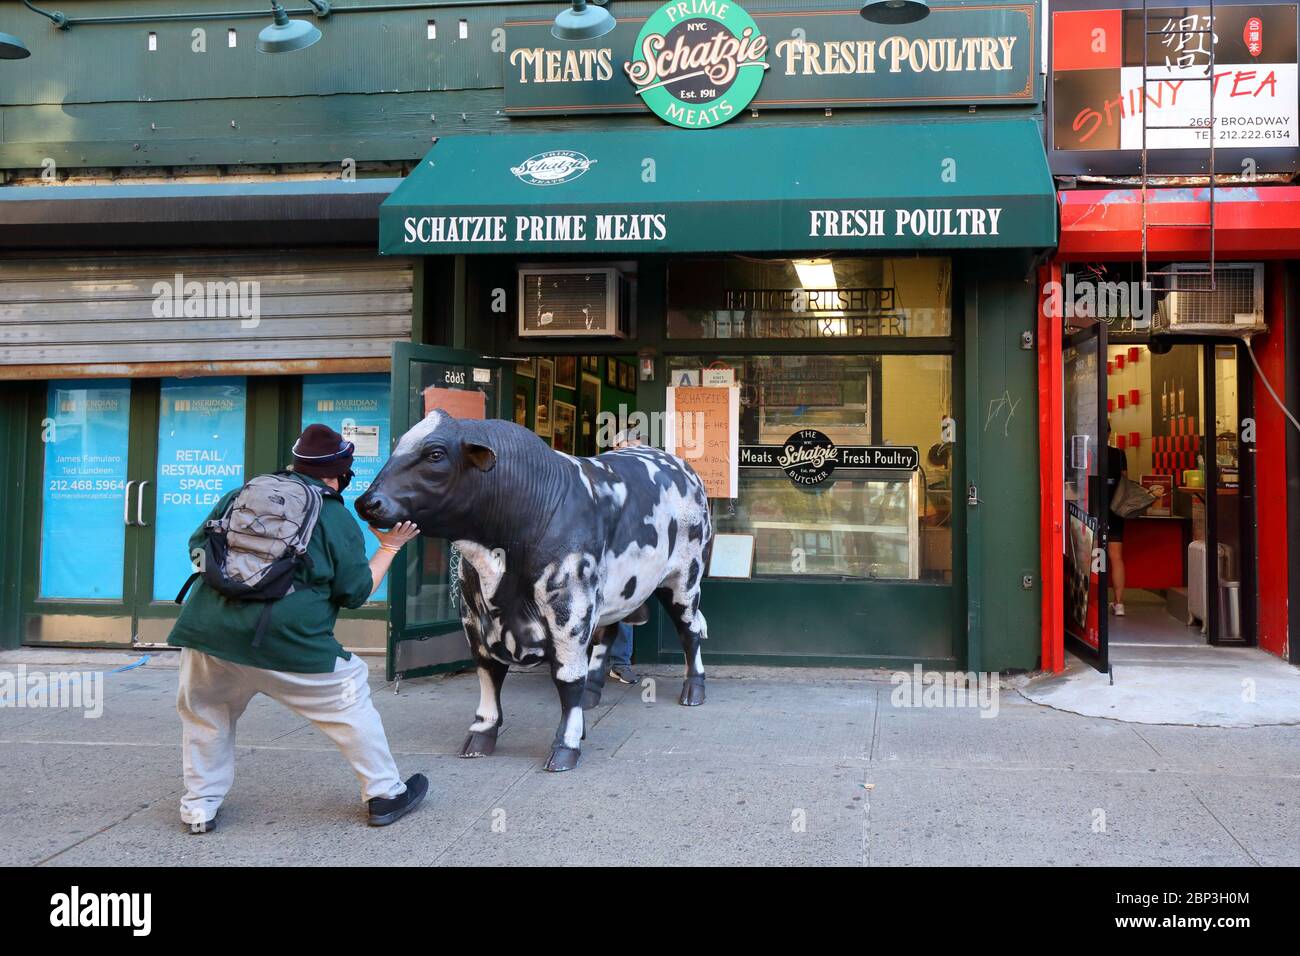 Eine Person rangliert eine Requisite zurück in Schatzie Prime Meats, 2665 Broadway in der Upper West Side von Manhattan, New York. Stockfoto